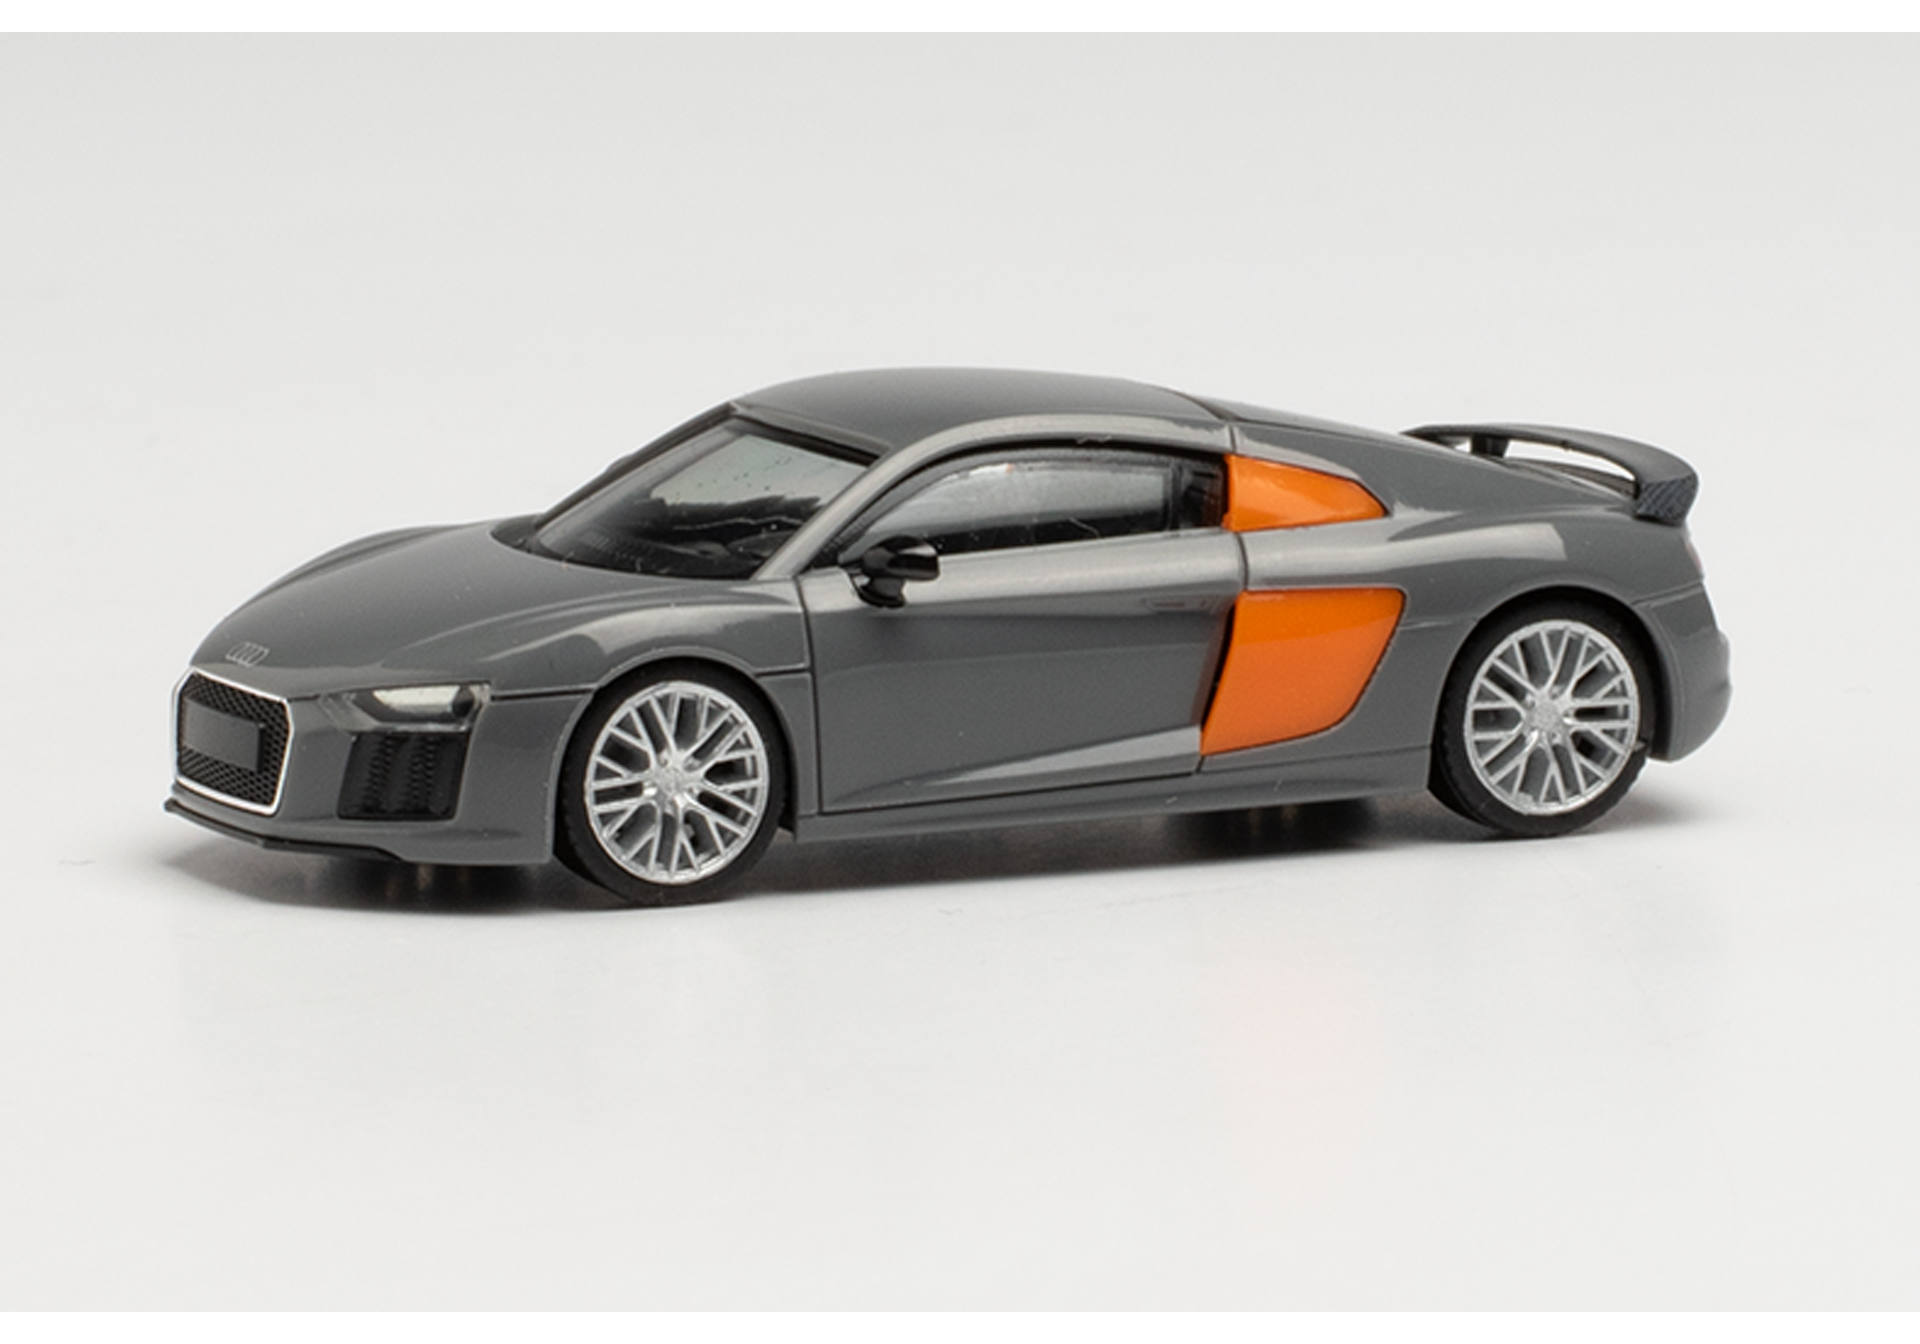 Audi R8 V10 Plus, nardo grey / Blade orange